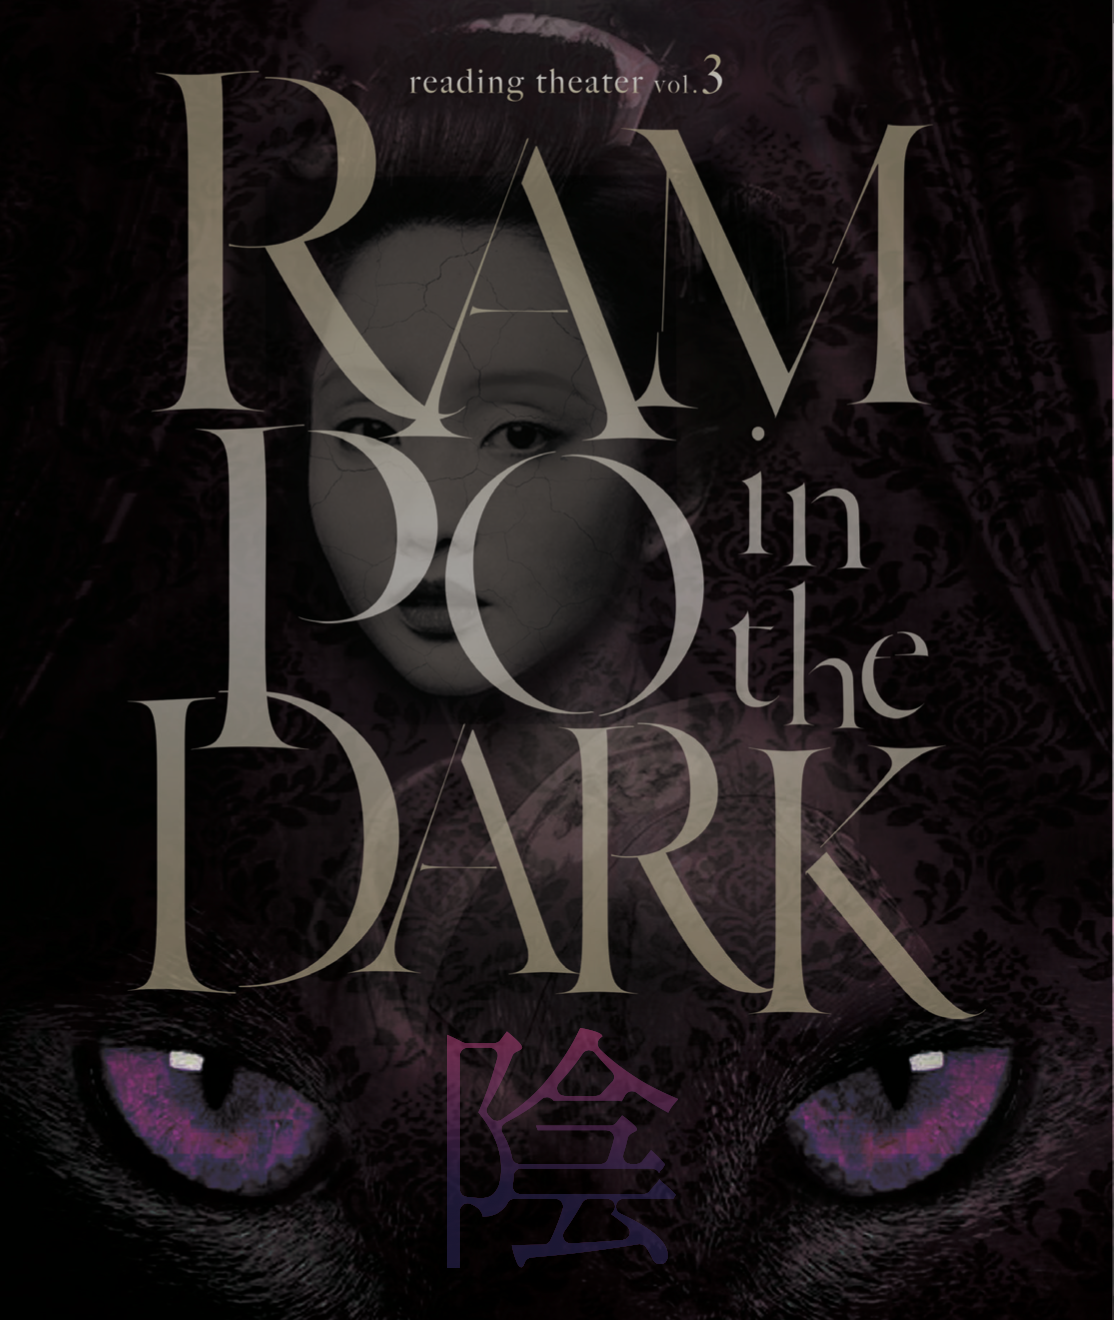 リーディングシアターvol.3「RAMPO in the DARK 陰 」公演Blu-ray - cccreation公式オンラインショップ  舞台・イベント関連グッズ販売